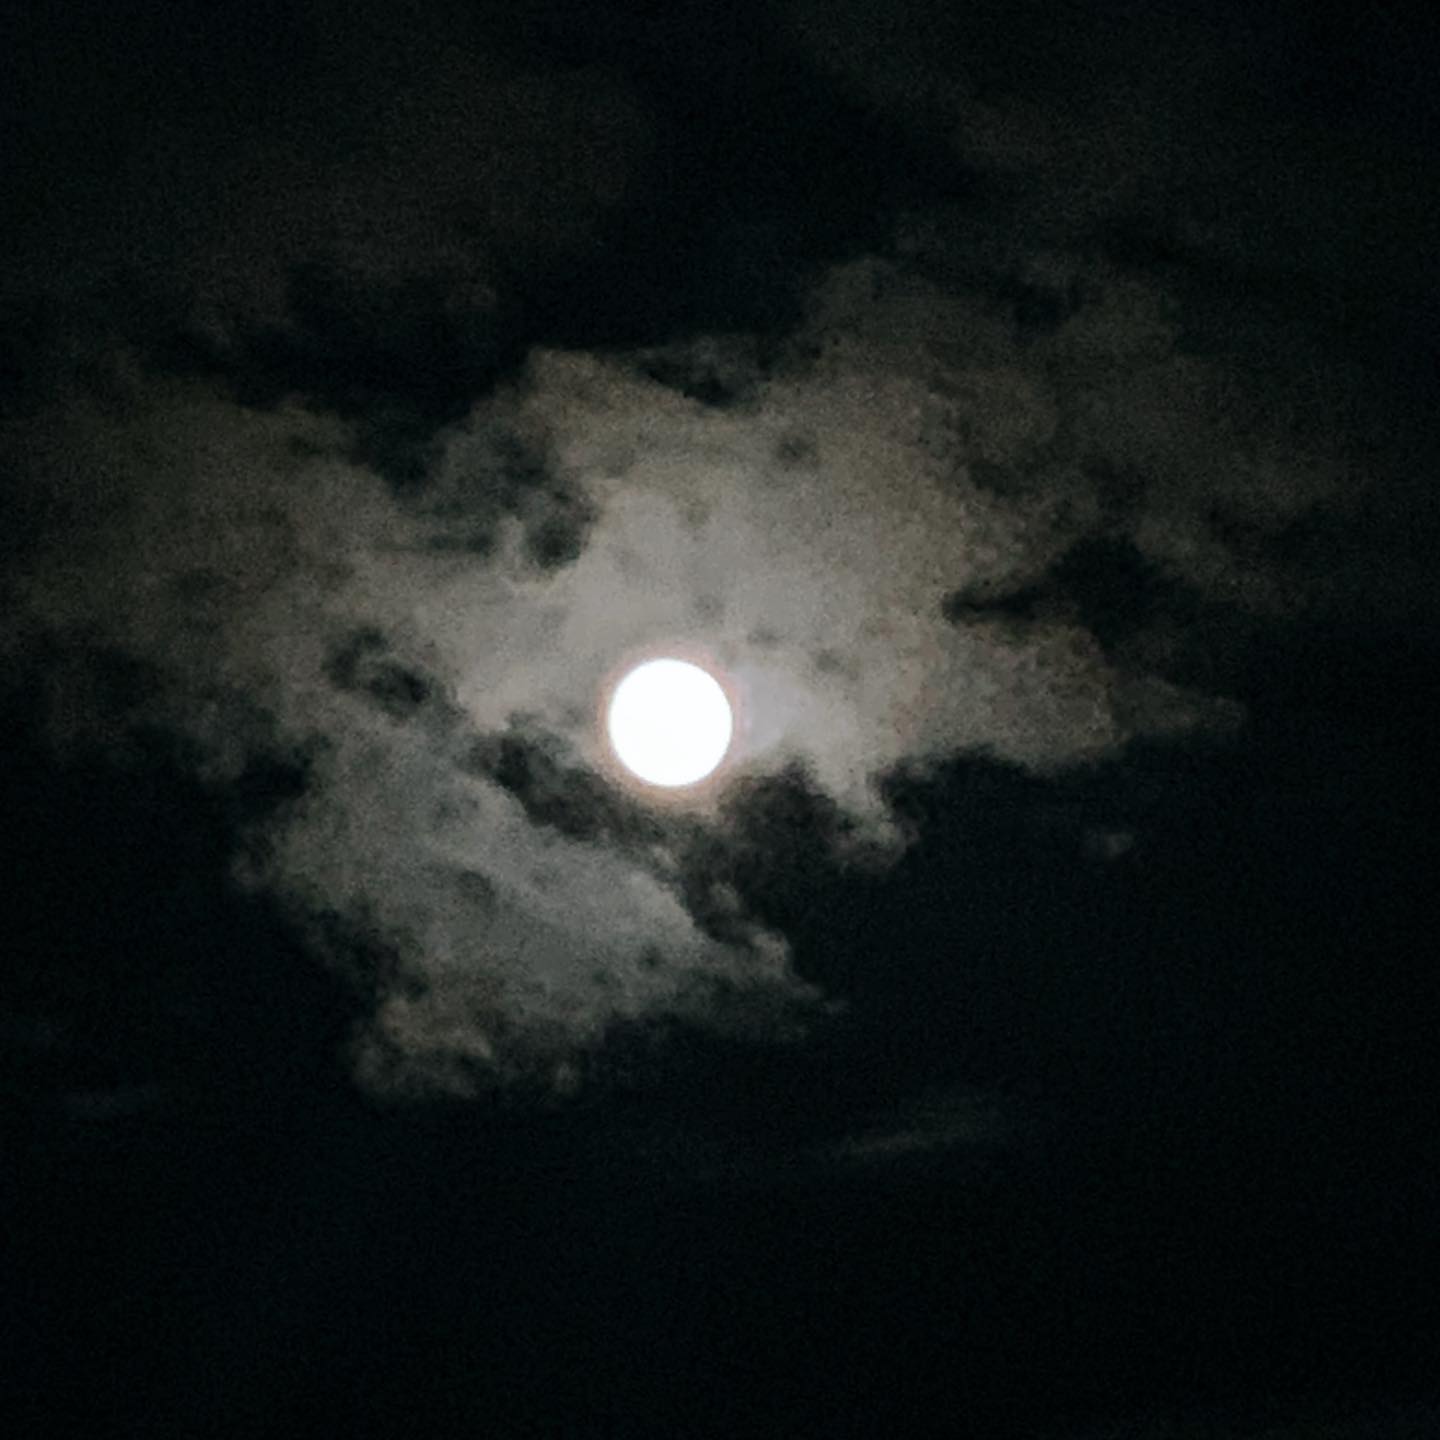 お月さまに会いたくて、ちょっとだけお散歩。雨上がりなのに、顔を見せてくれたお月さま。明日は中秋の名月、さらに美しい姿を見せてくれるのかな。眺めているだけで、心が落ち着く。今夜もありがとう。